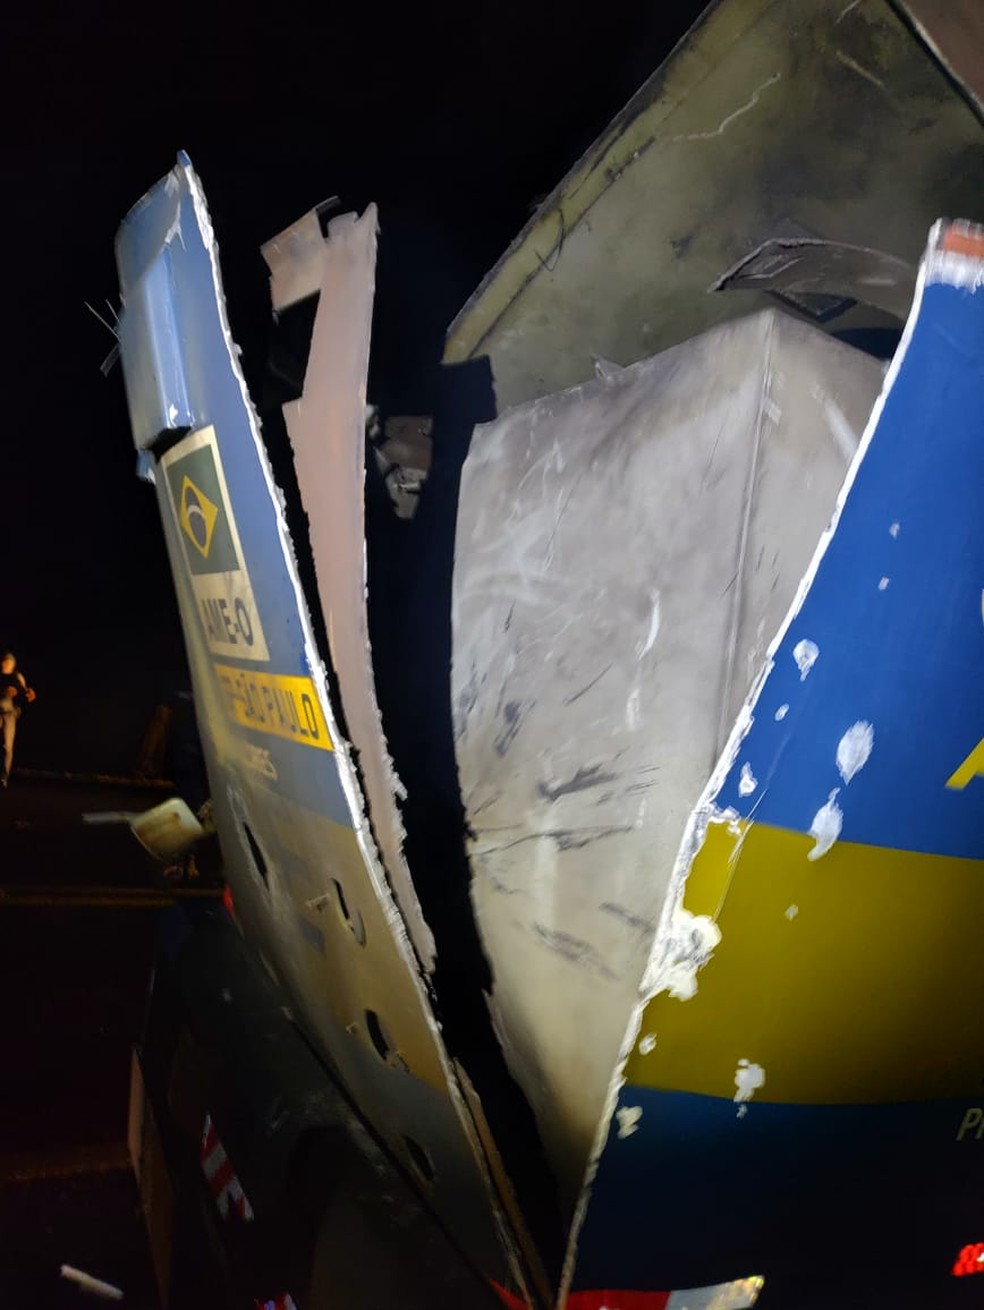 Carro-forte ficou danificado durante assalto na SP-318 em São Carlos — Foto: Arquivo pessoal